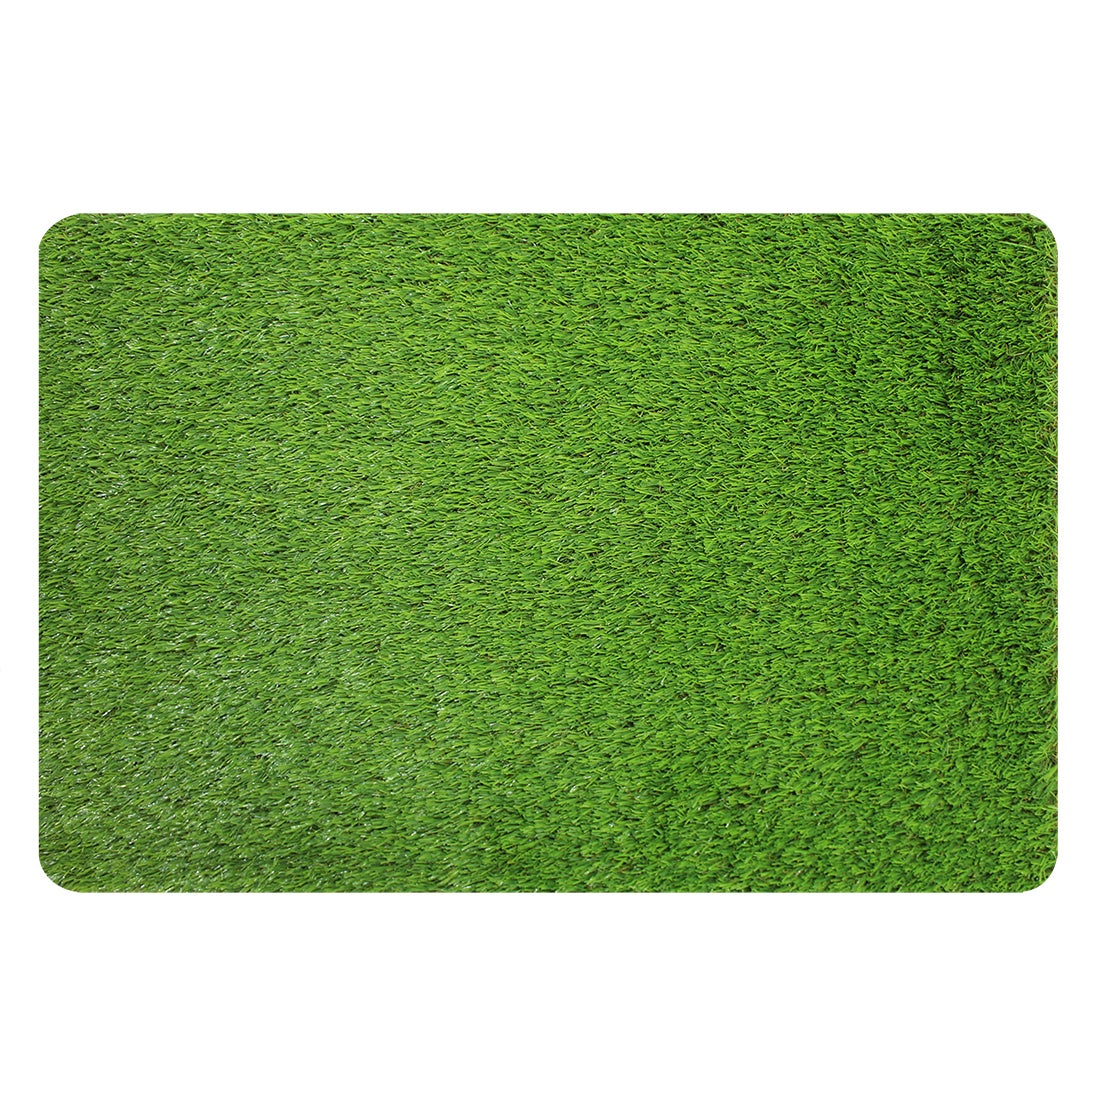 Felpudo antideslizante con forma geométrica, tapete absorbente  antideslizante para el hogar, alfombra de pasillo de entrada interior y  exterior resistente al desgaste, color beige, 50*80cm Rojo Verde